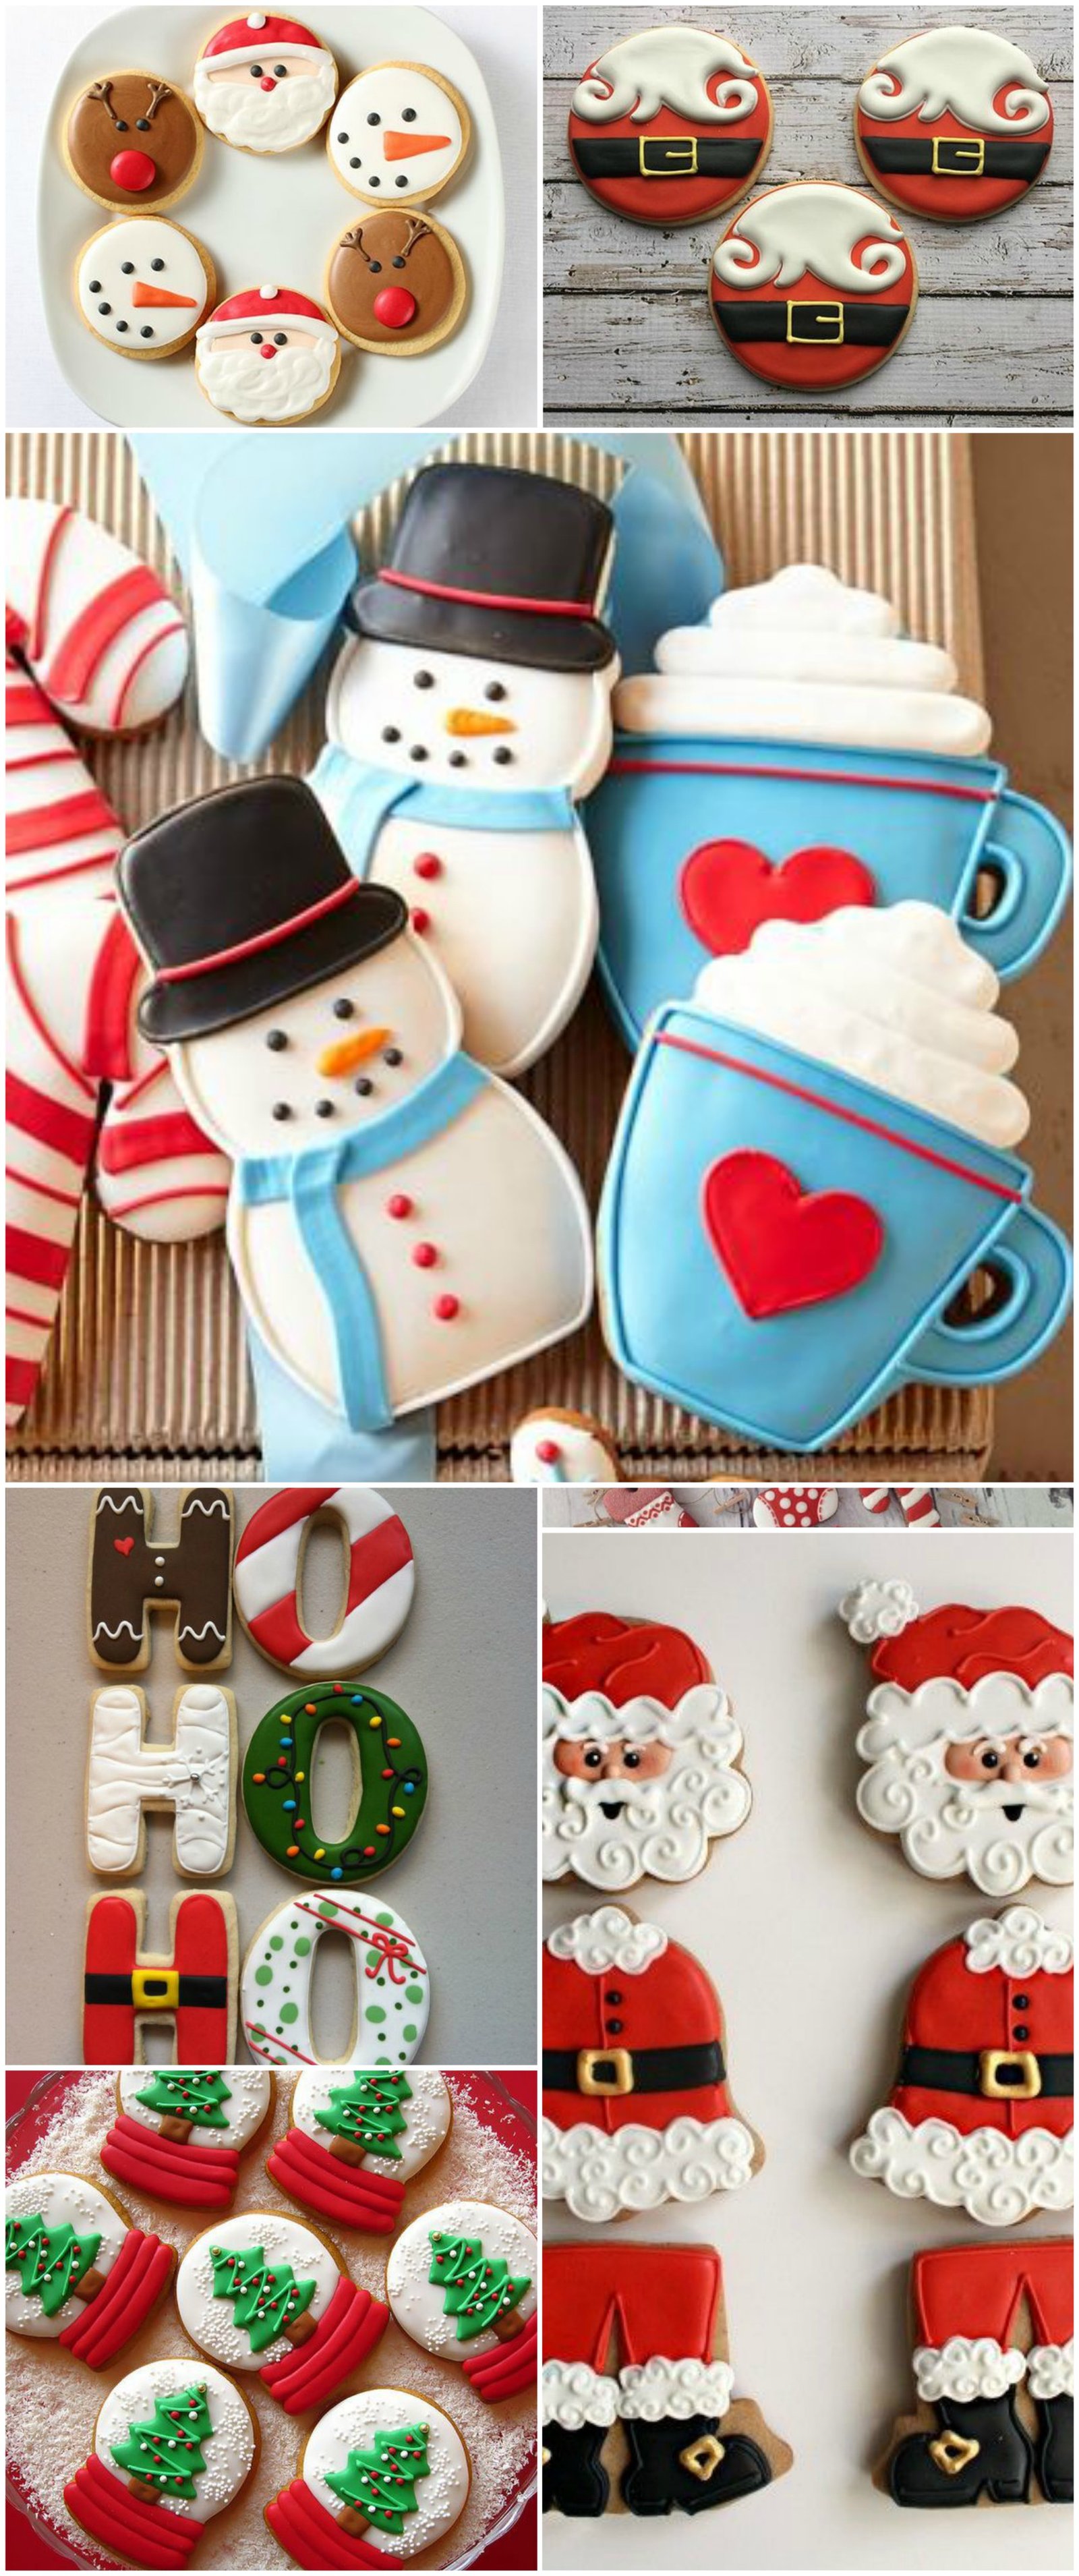 Biscoitos decorados de Natal | Quase Mineira